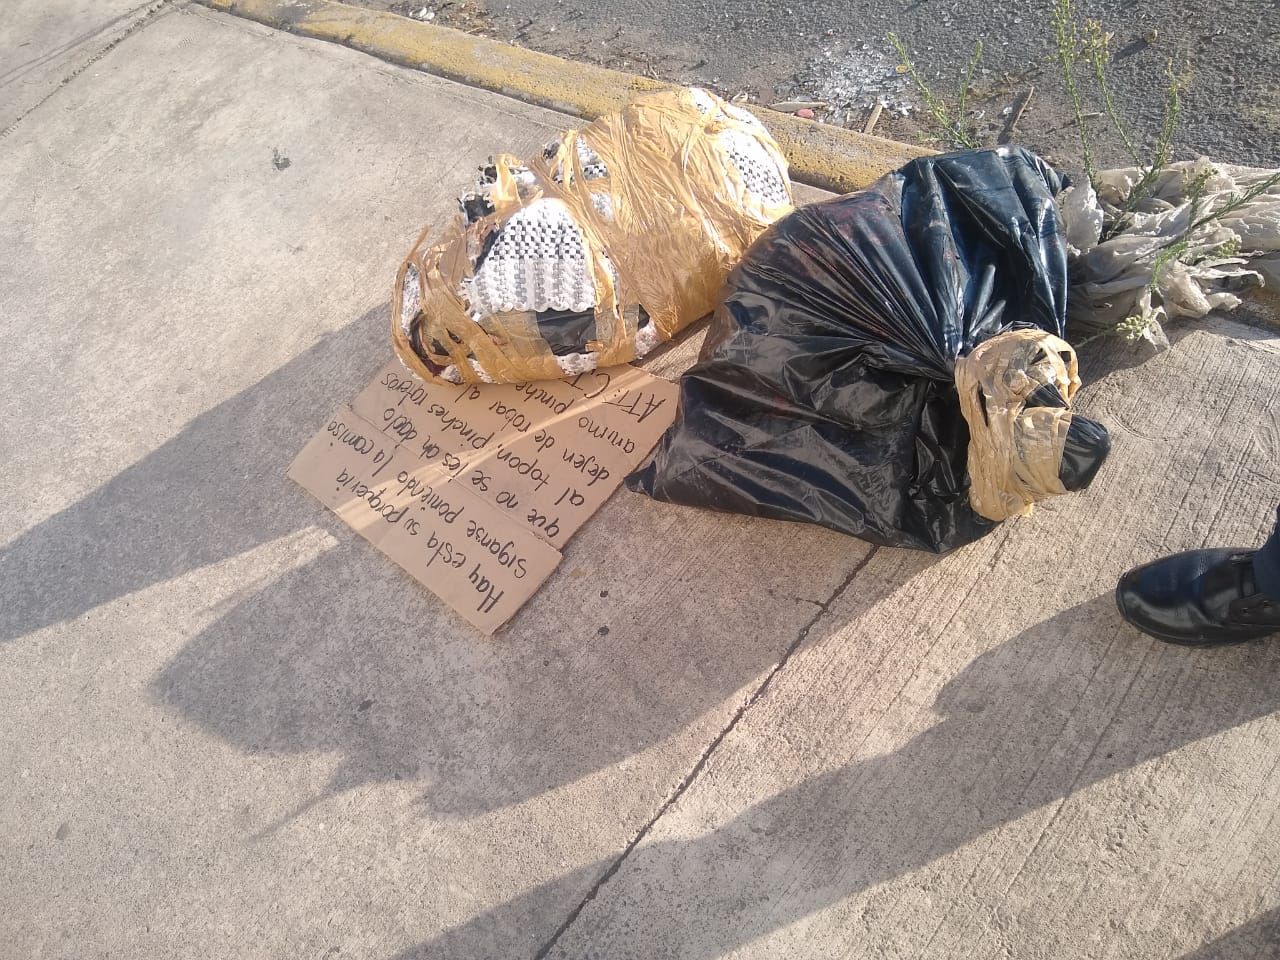 En Valle de Chalco encontraron una bolsa con un cuerpo cercenado: Seguridad Pública